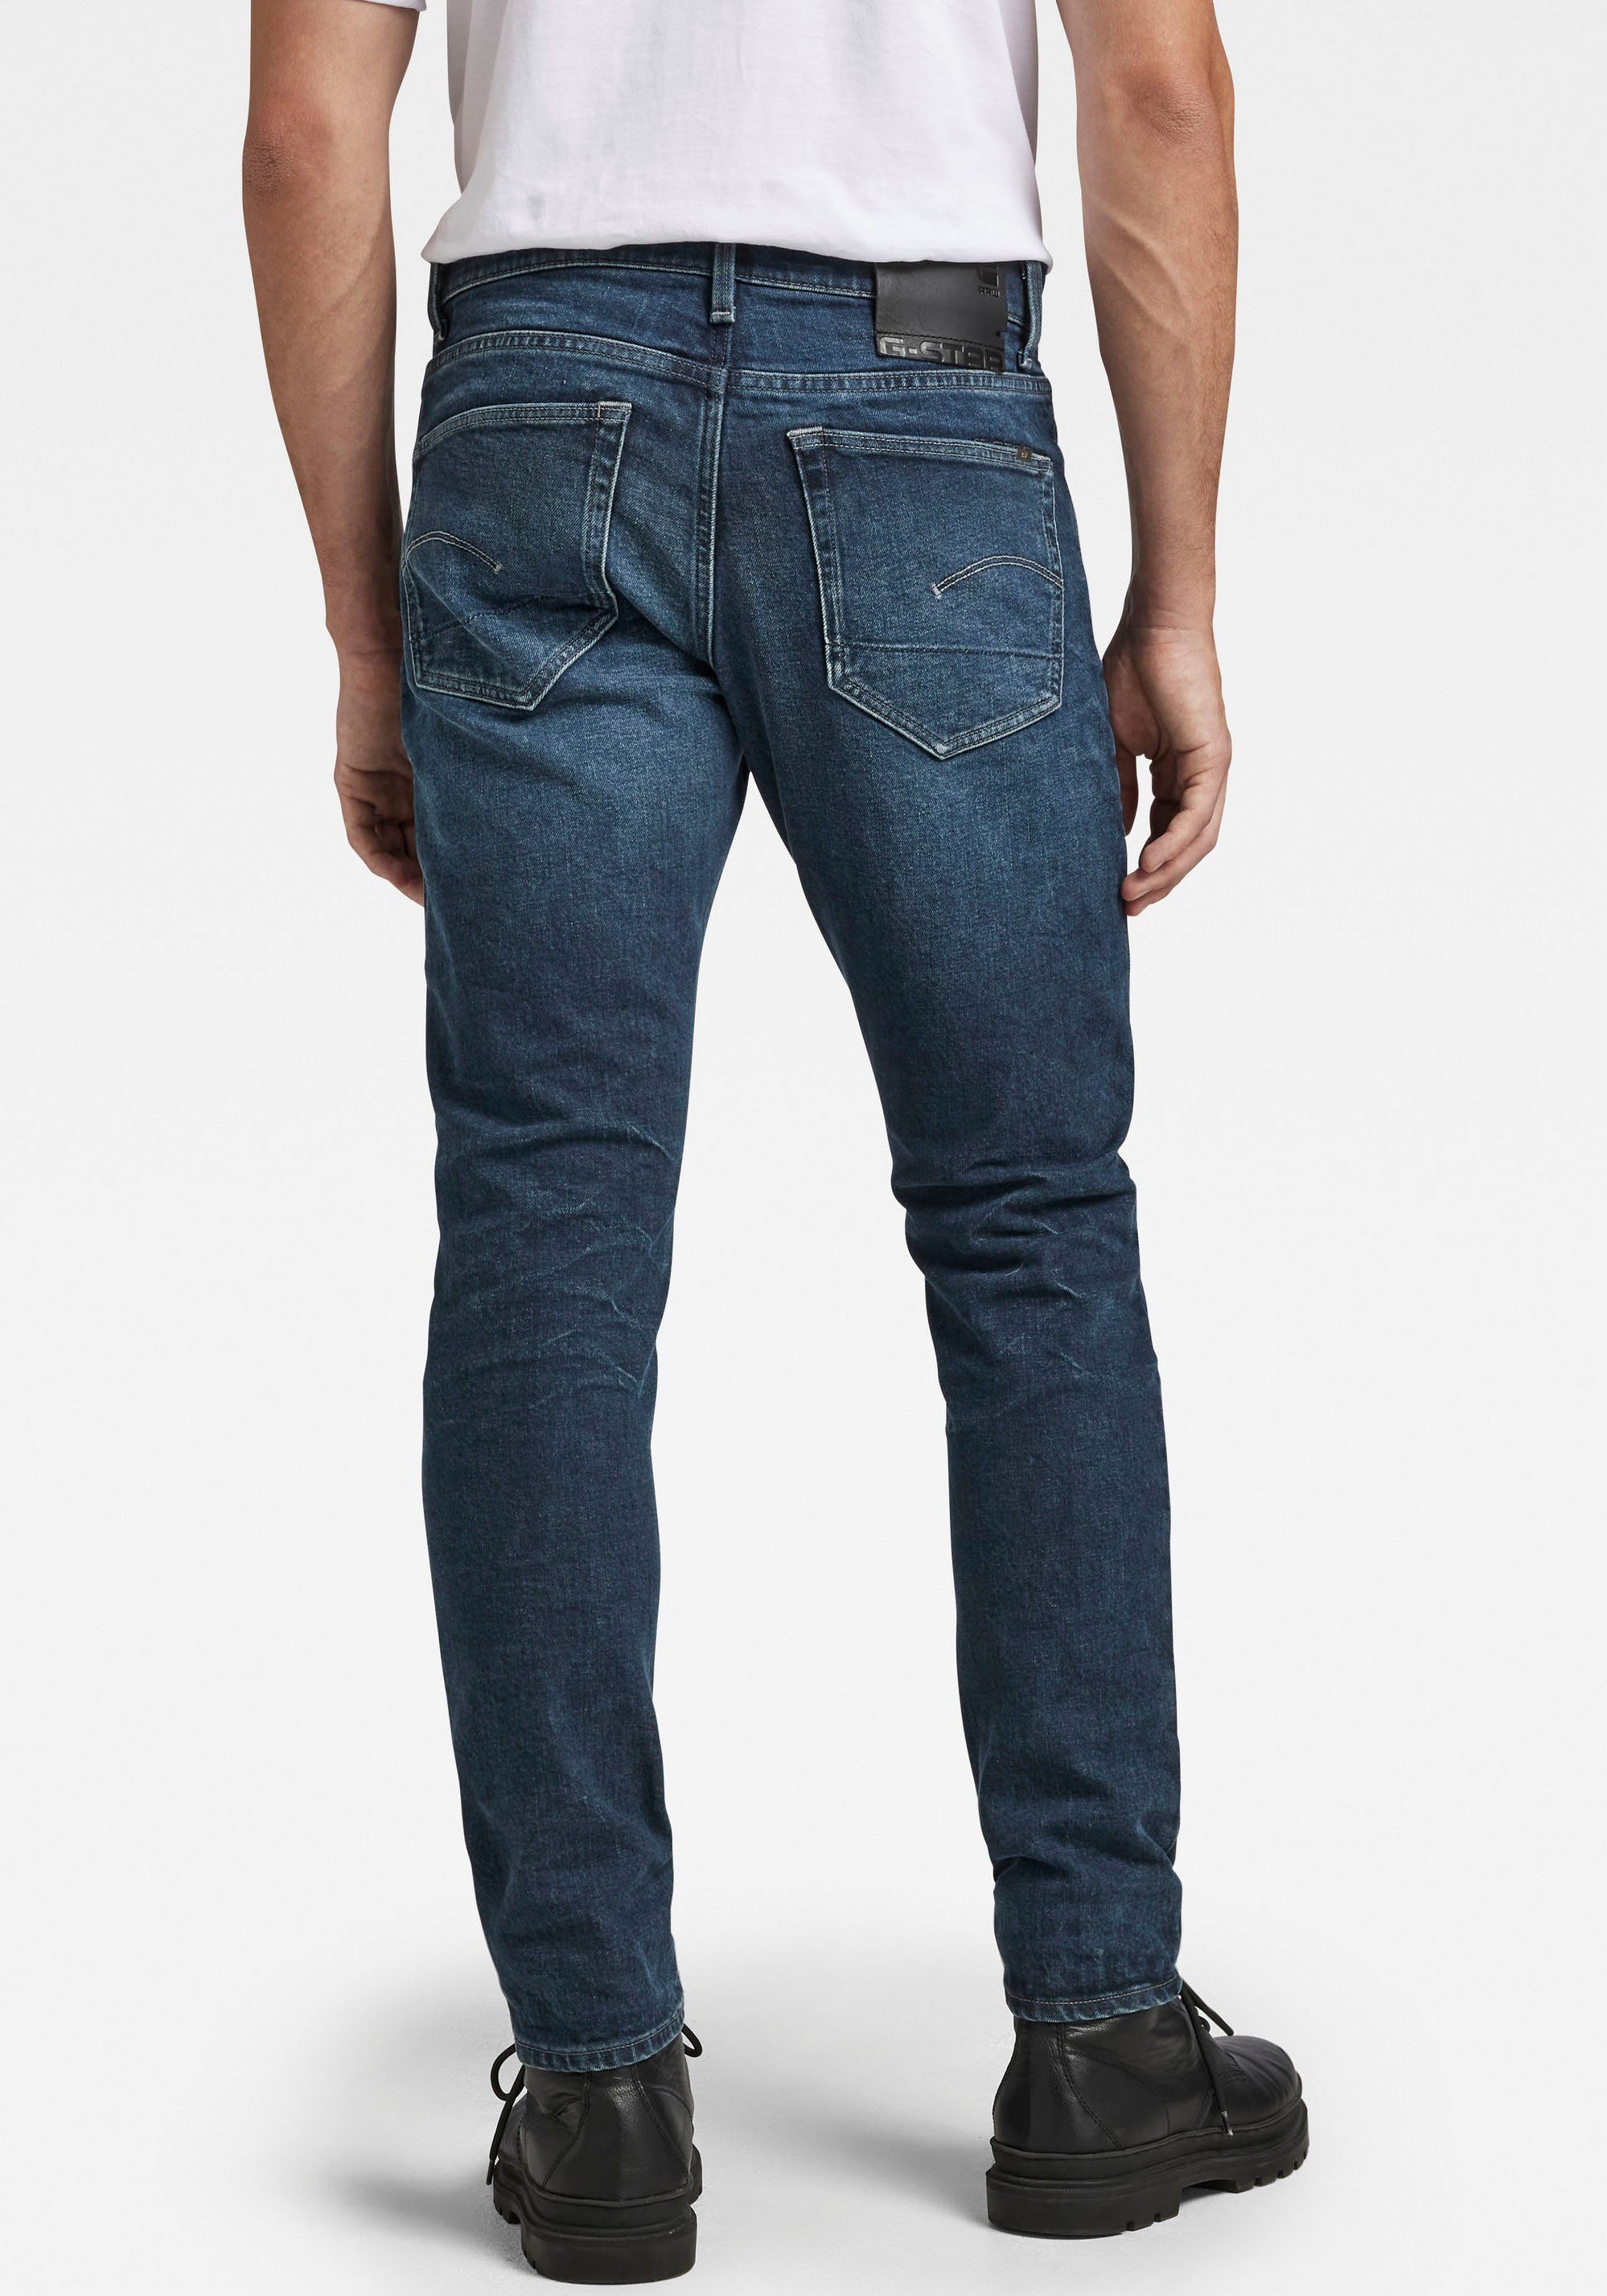 G-Star Slim-fit-Jeans in teal Slim worn RAW deep 3301